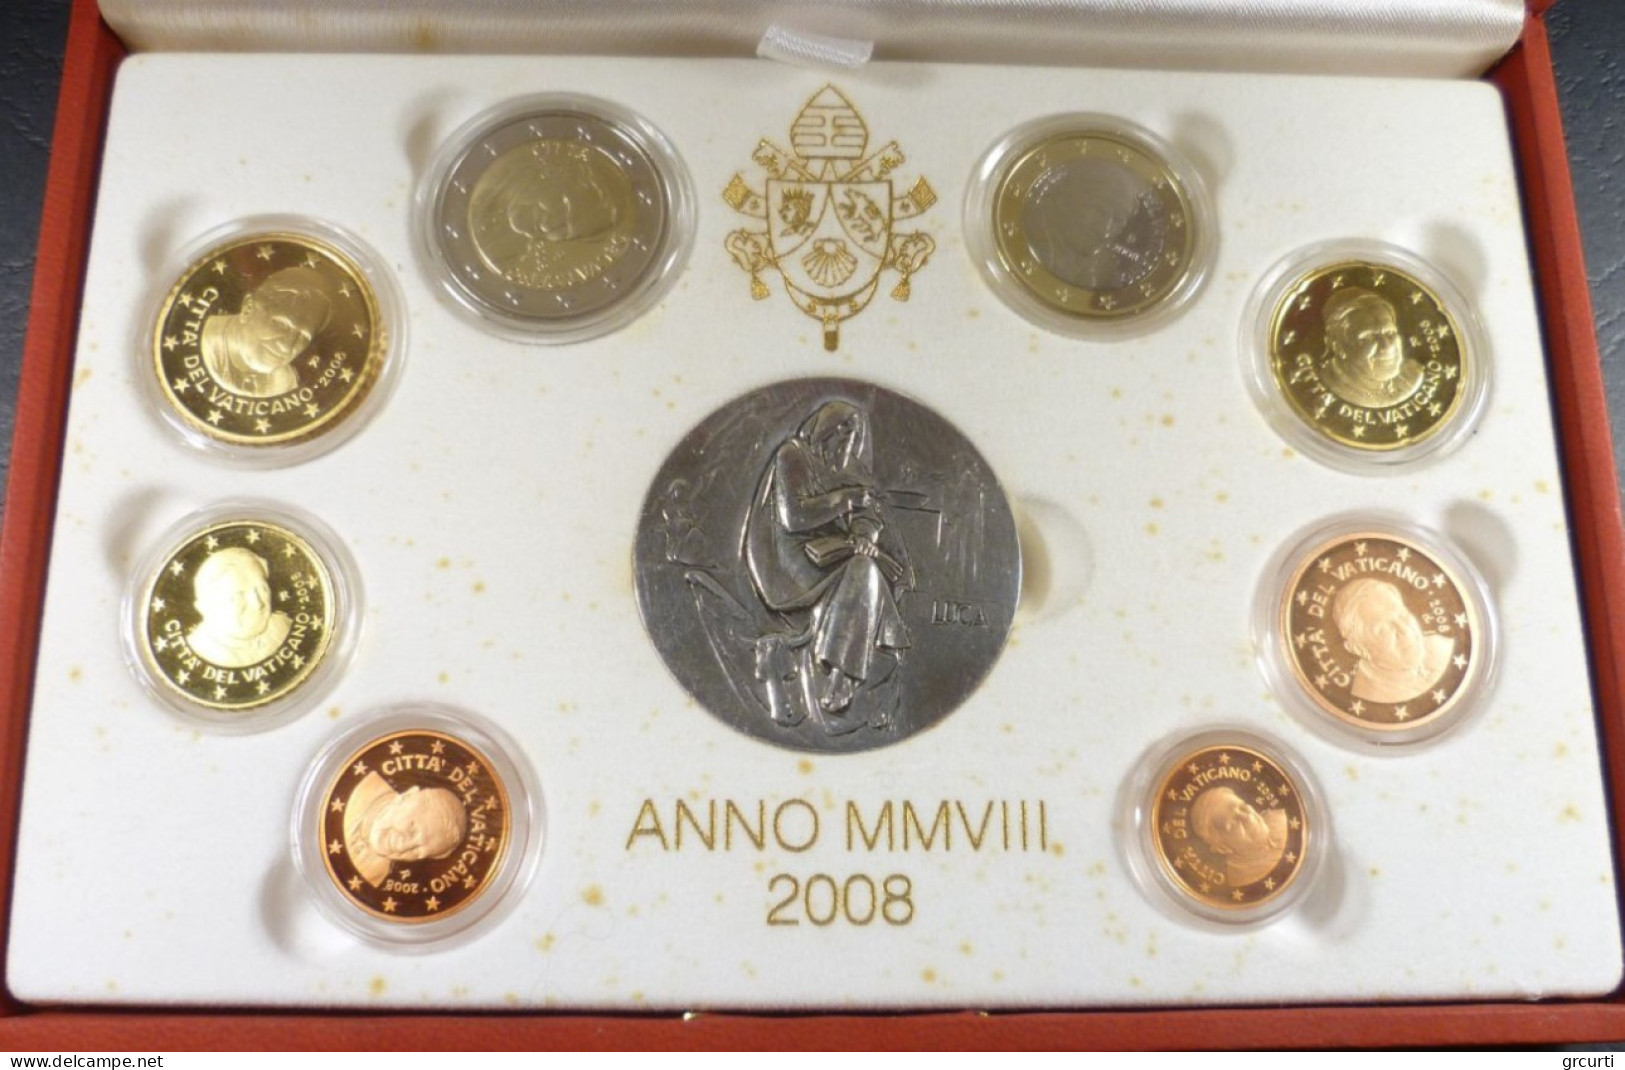 Vaticano - 2008 - Benedetto XVI - Serie Zecca 8 Valori Fondo Specchio - Con Medaglia In Argento - Vatican